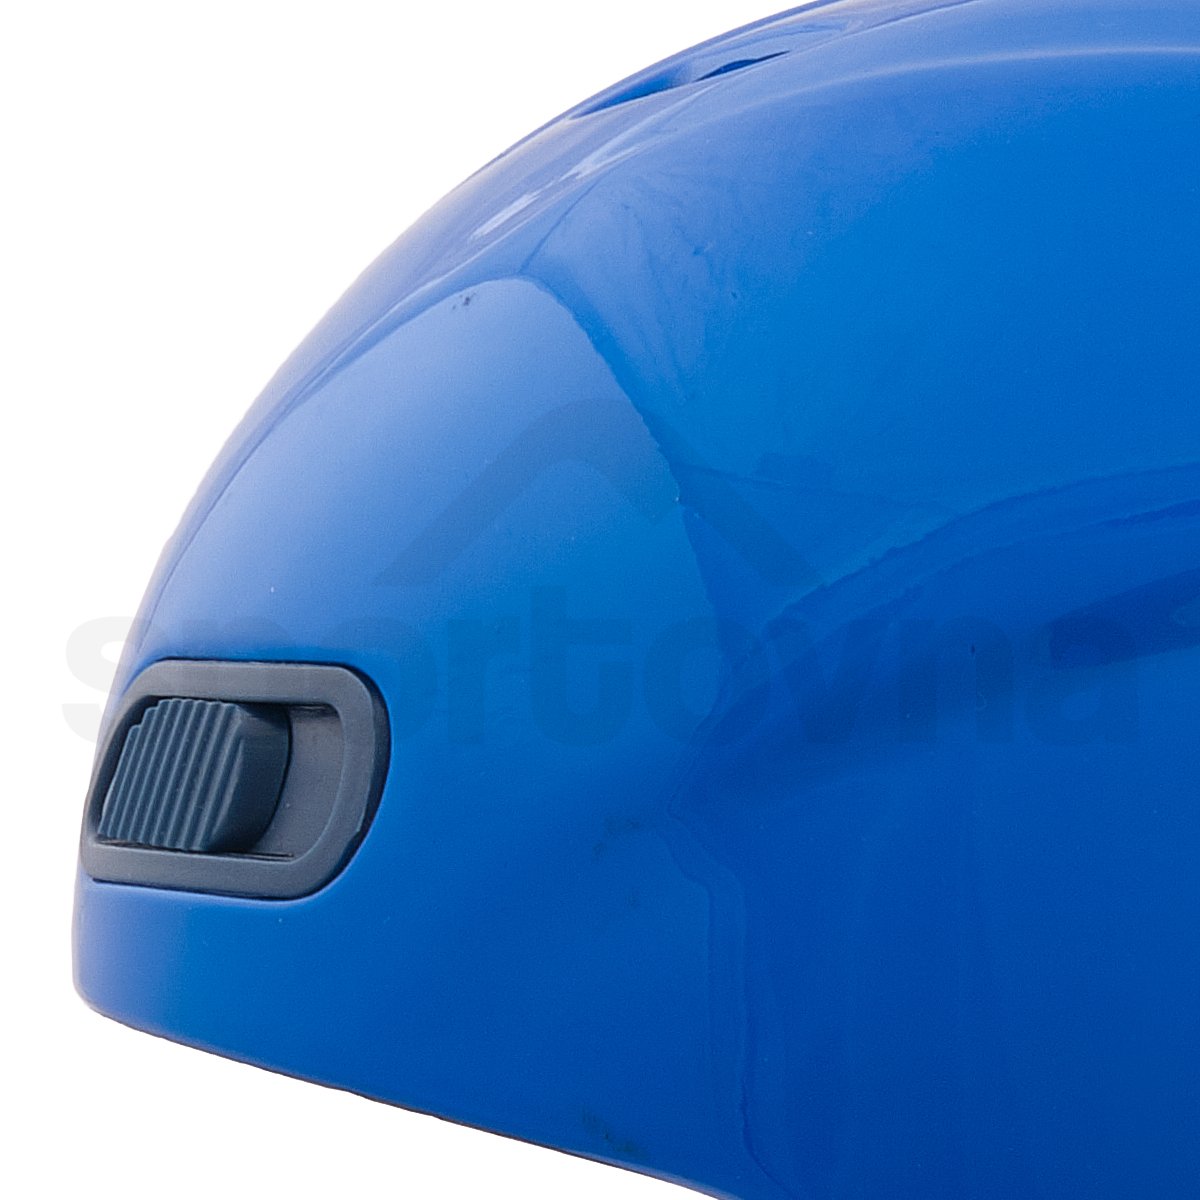 Lyžařská helma Burton Buzzca Jr - modrá